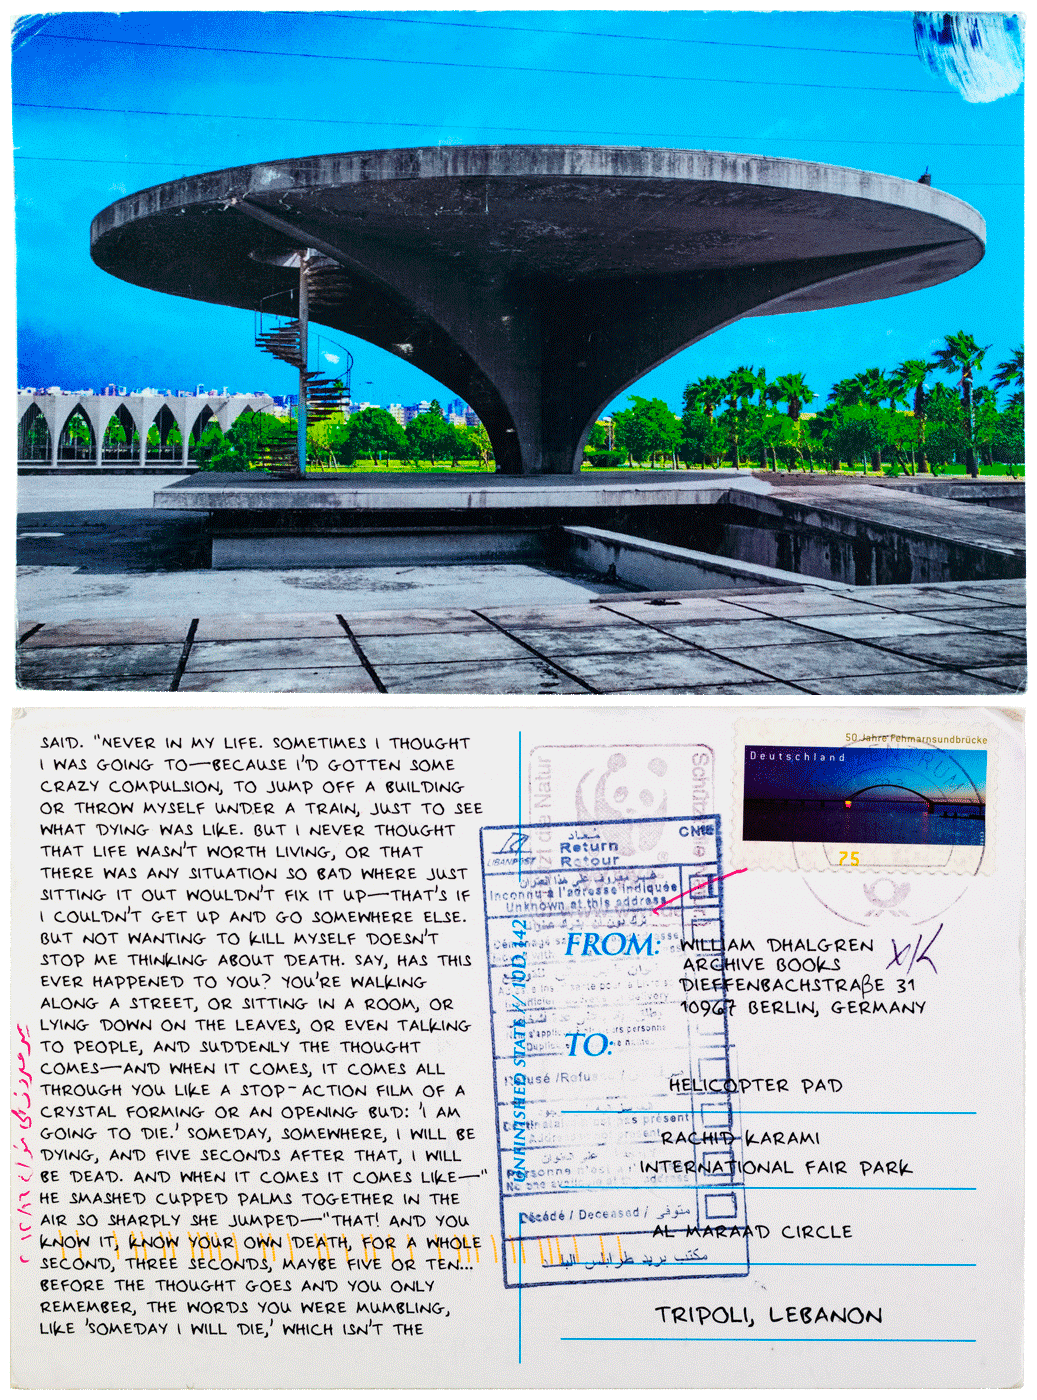 Unfinished State helipad postcard, Oscar Niemeyer